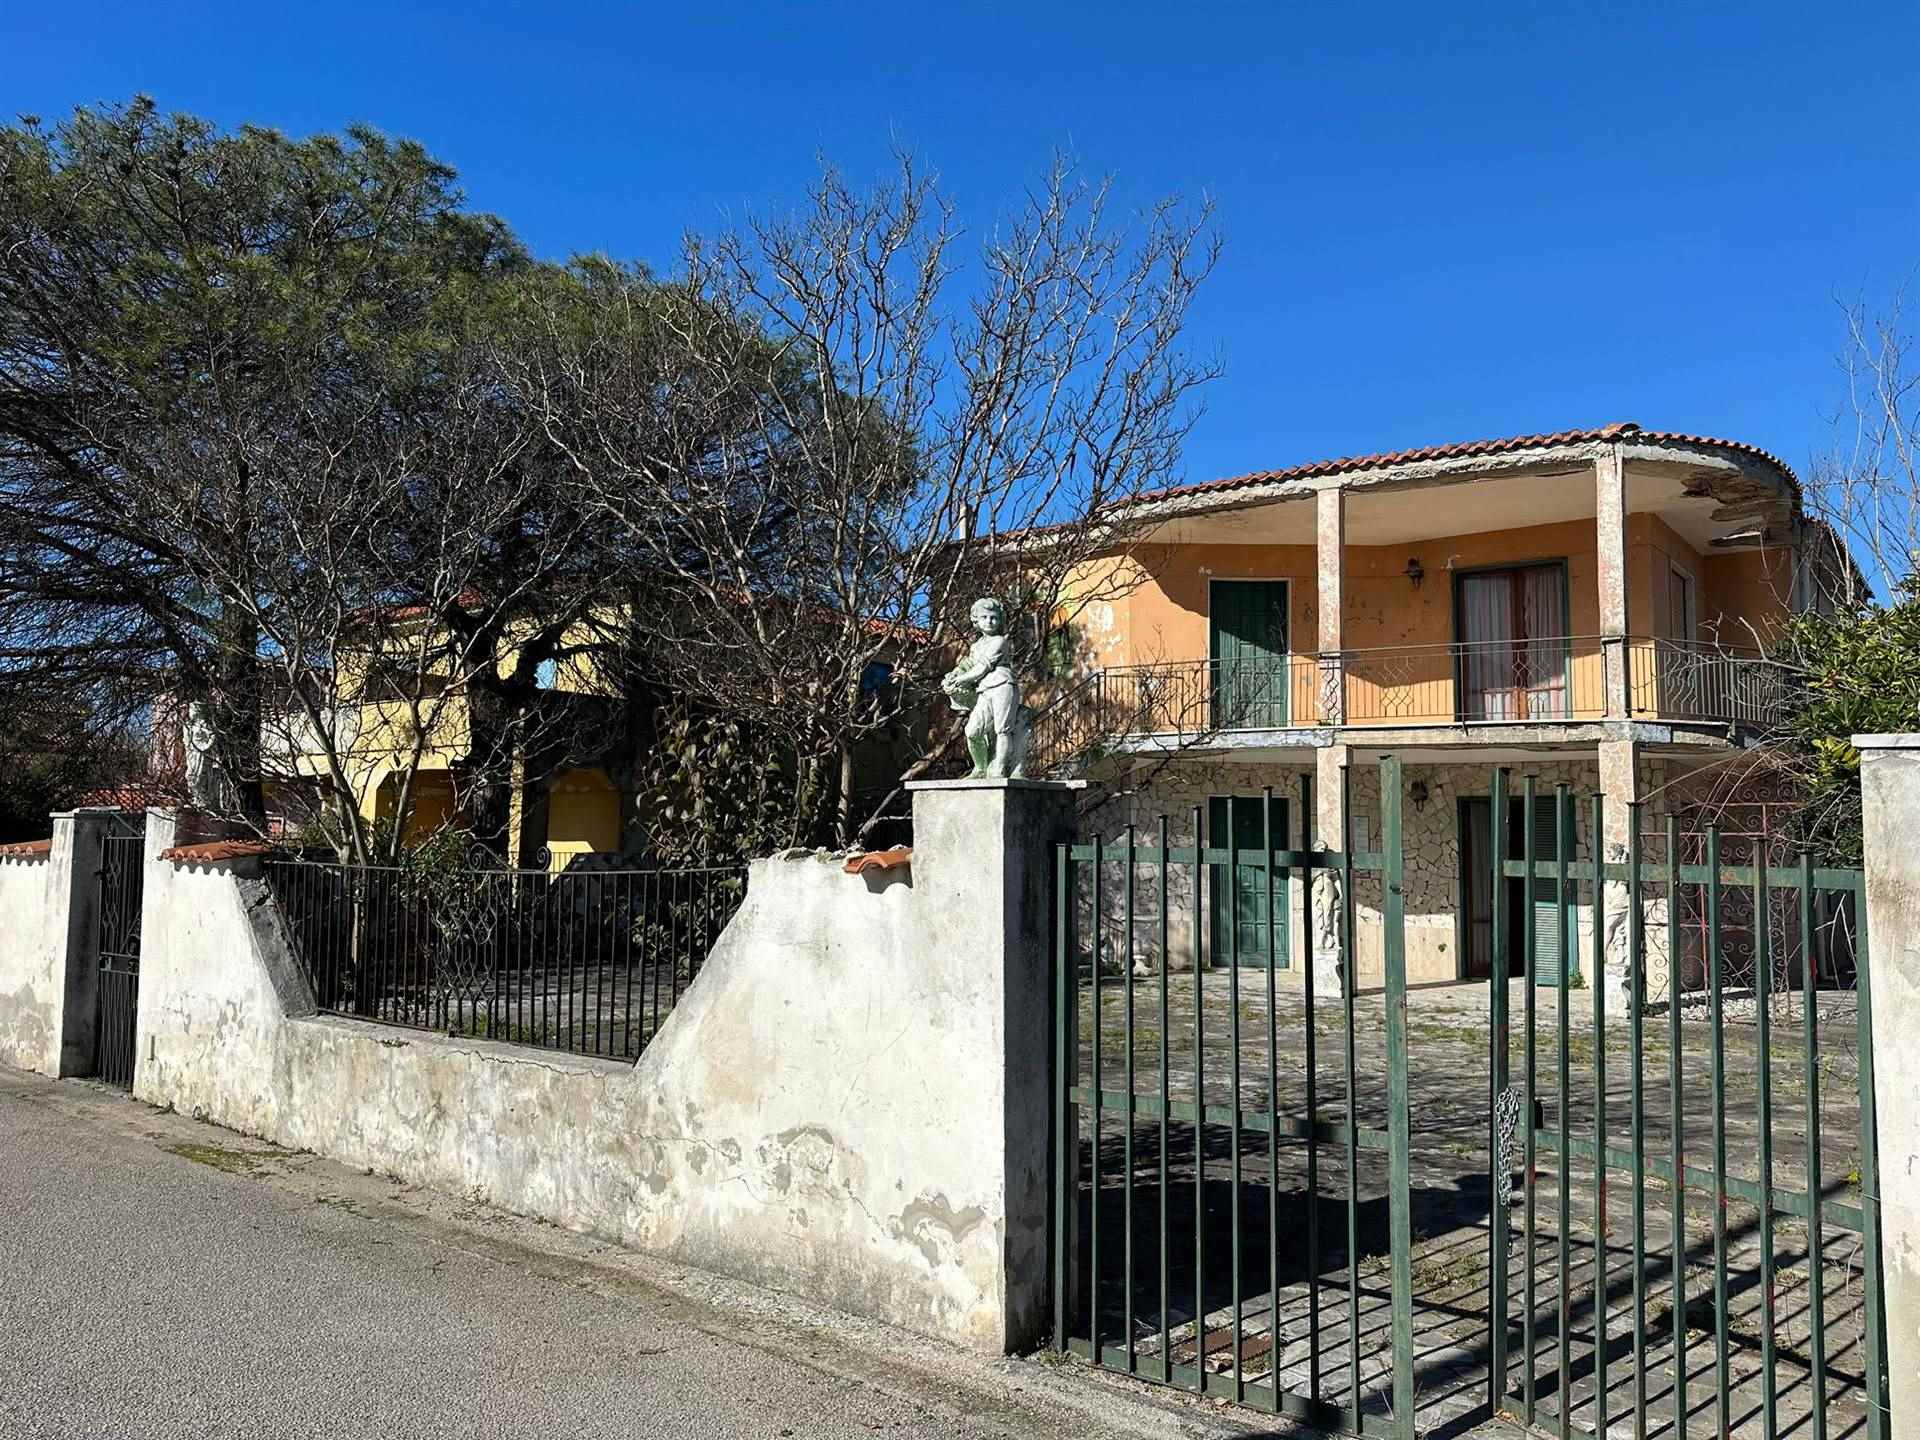 Villa Bifamiliare in vendita a Castel Volturno, 6 locali, zona Località: BAIA VERDE - PINETA GRANDE, prezzo € 80.000 | PortaleAgenzieImmobiliari.it